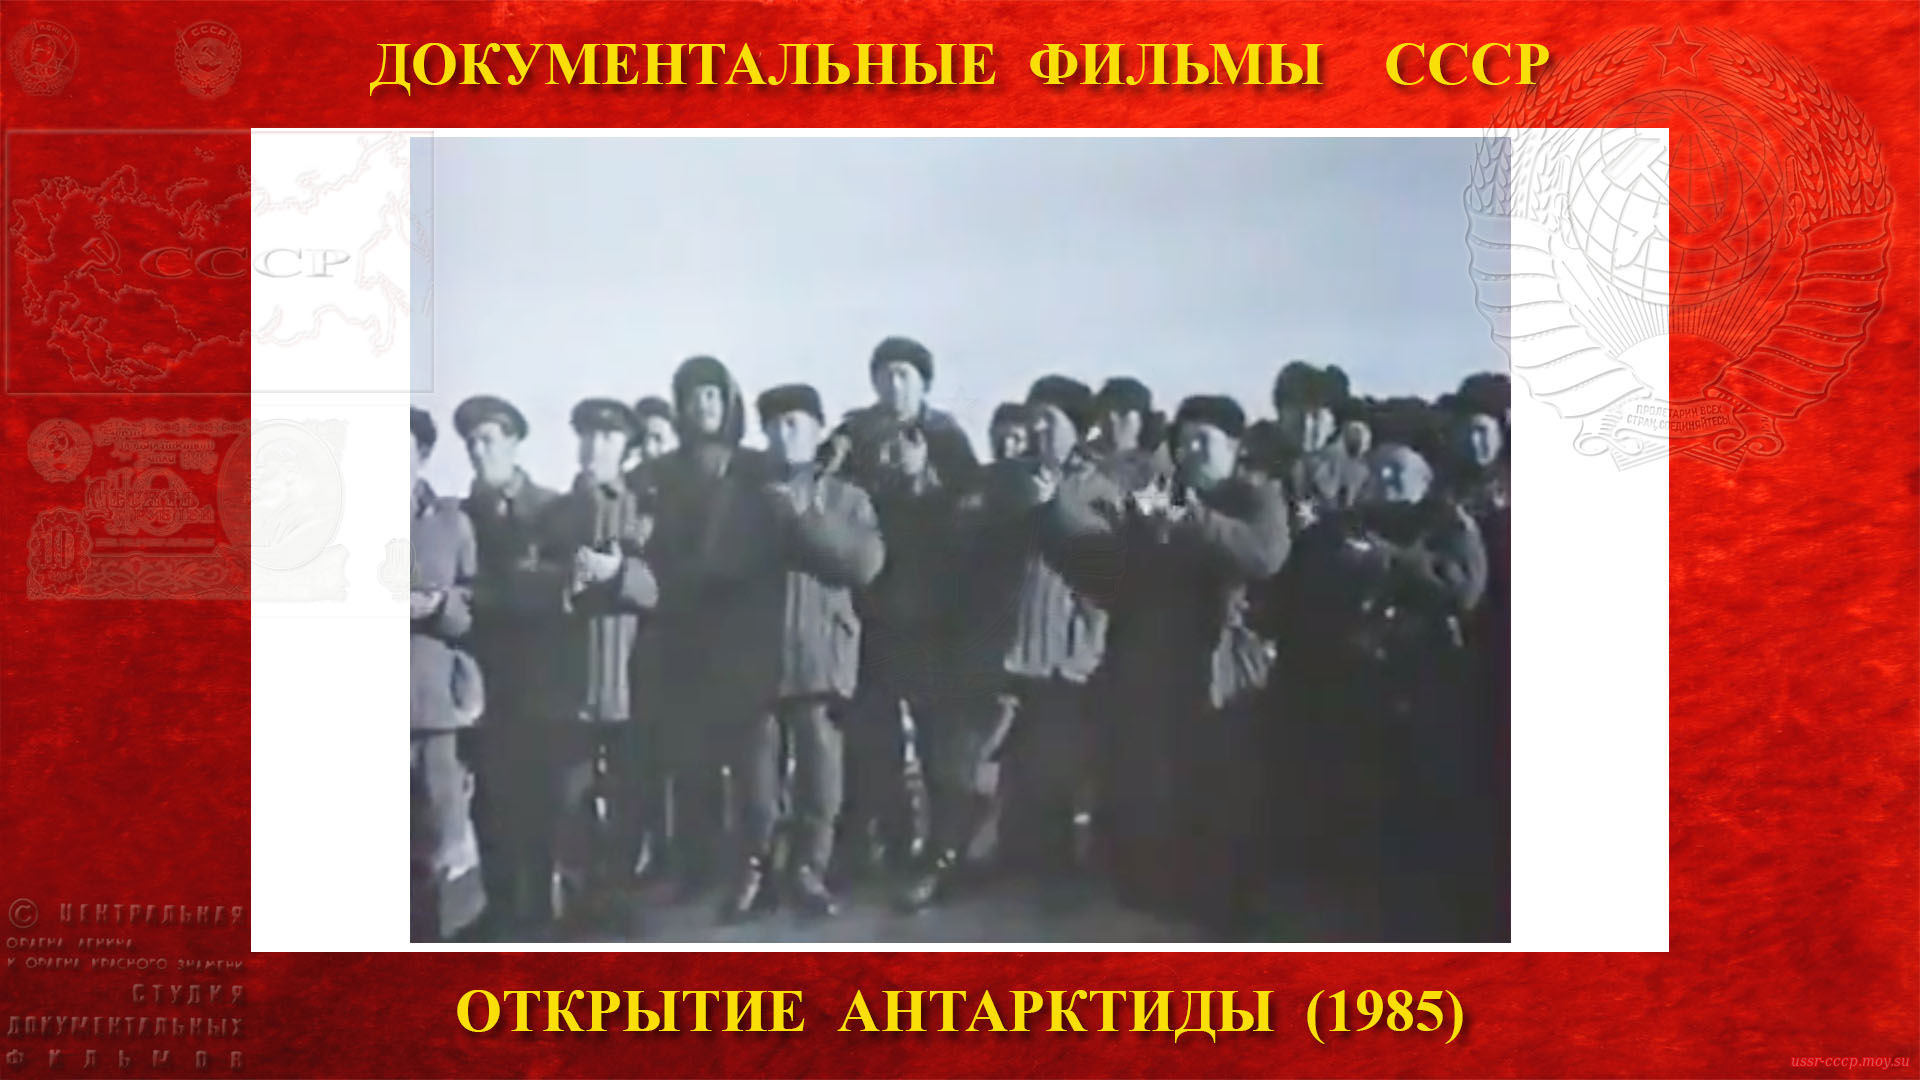 Открытие Антарктиды — состоялся митинг по поводу поднятия Государственного флага СССР.